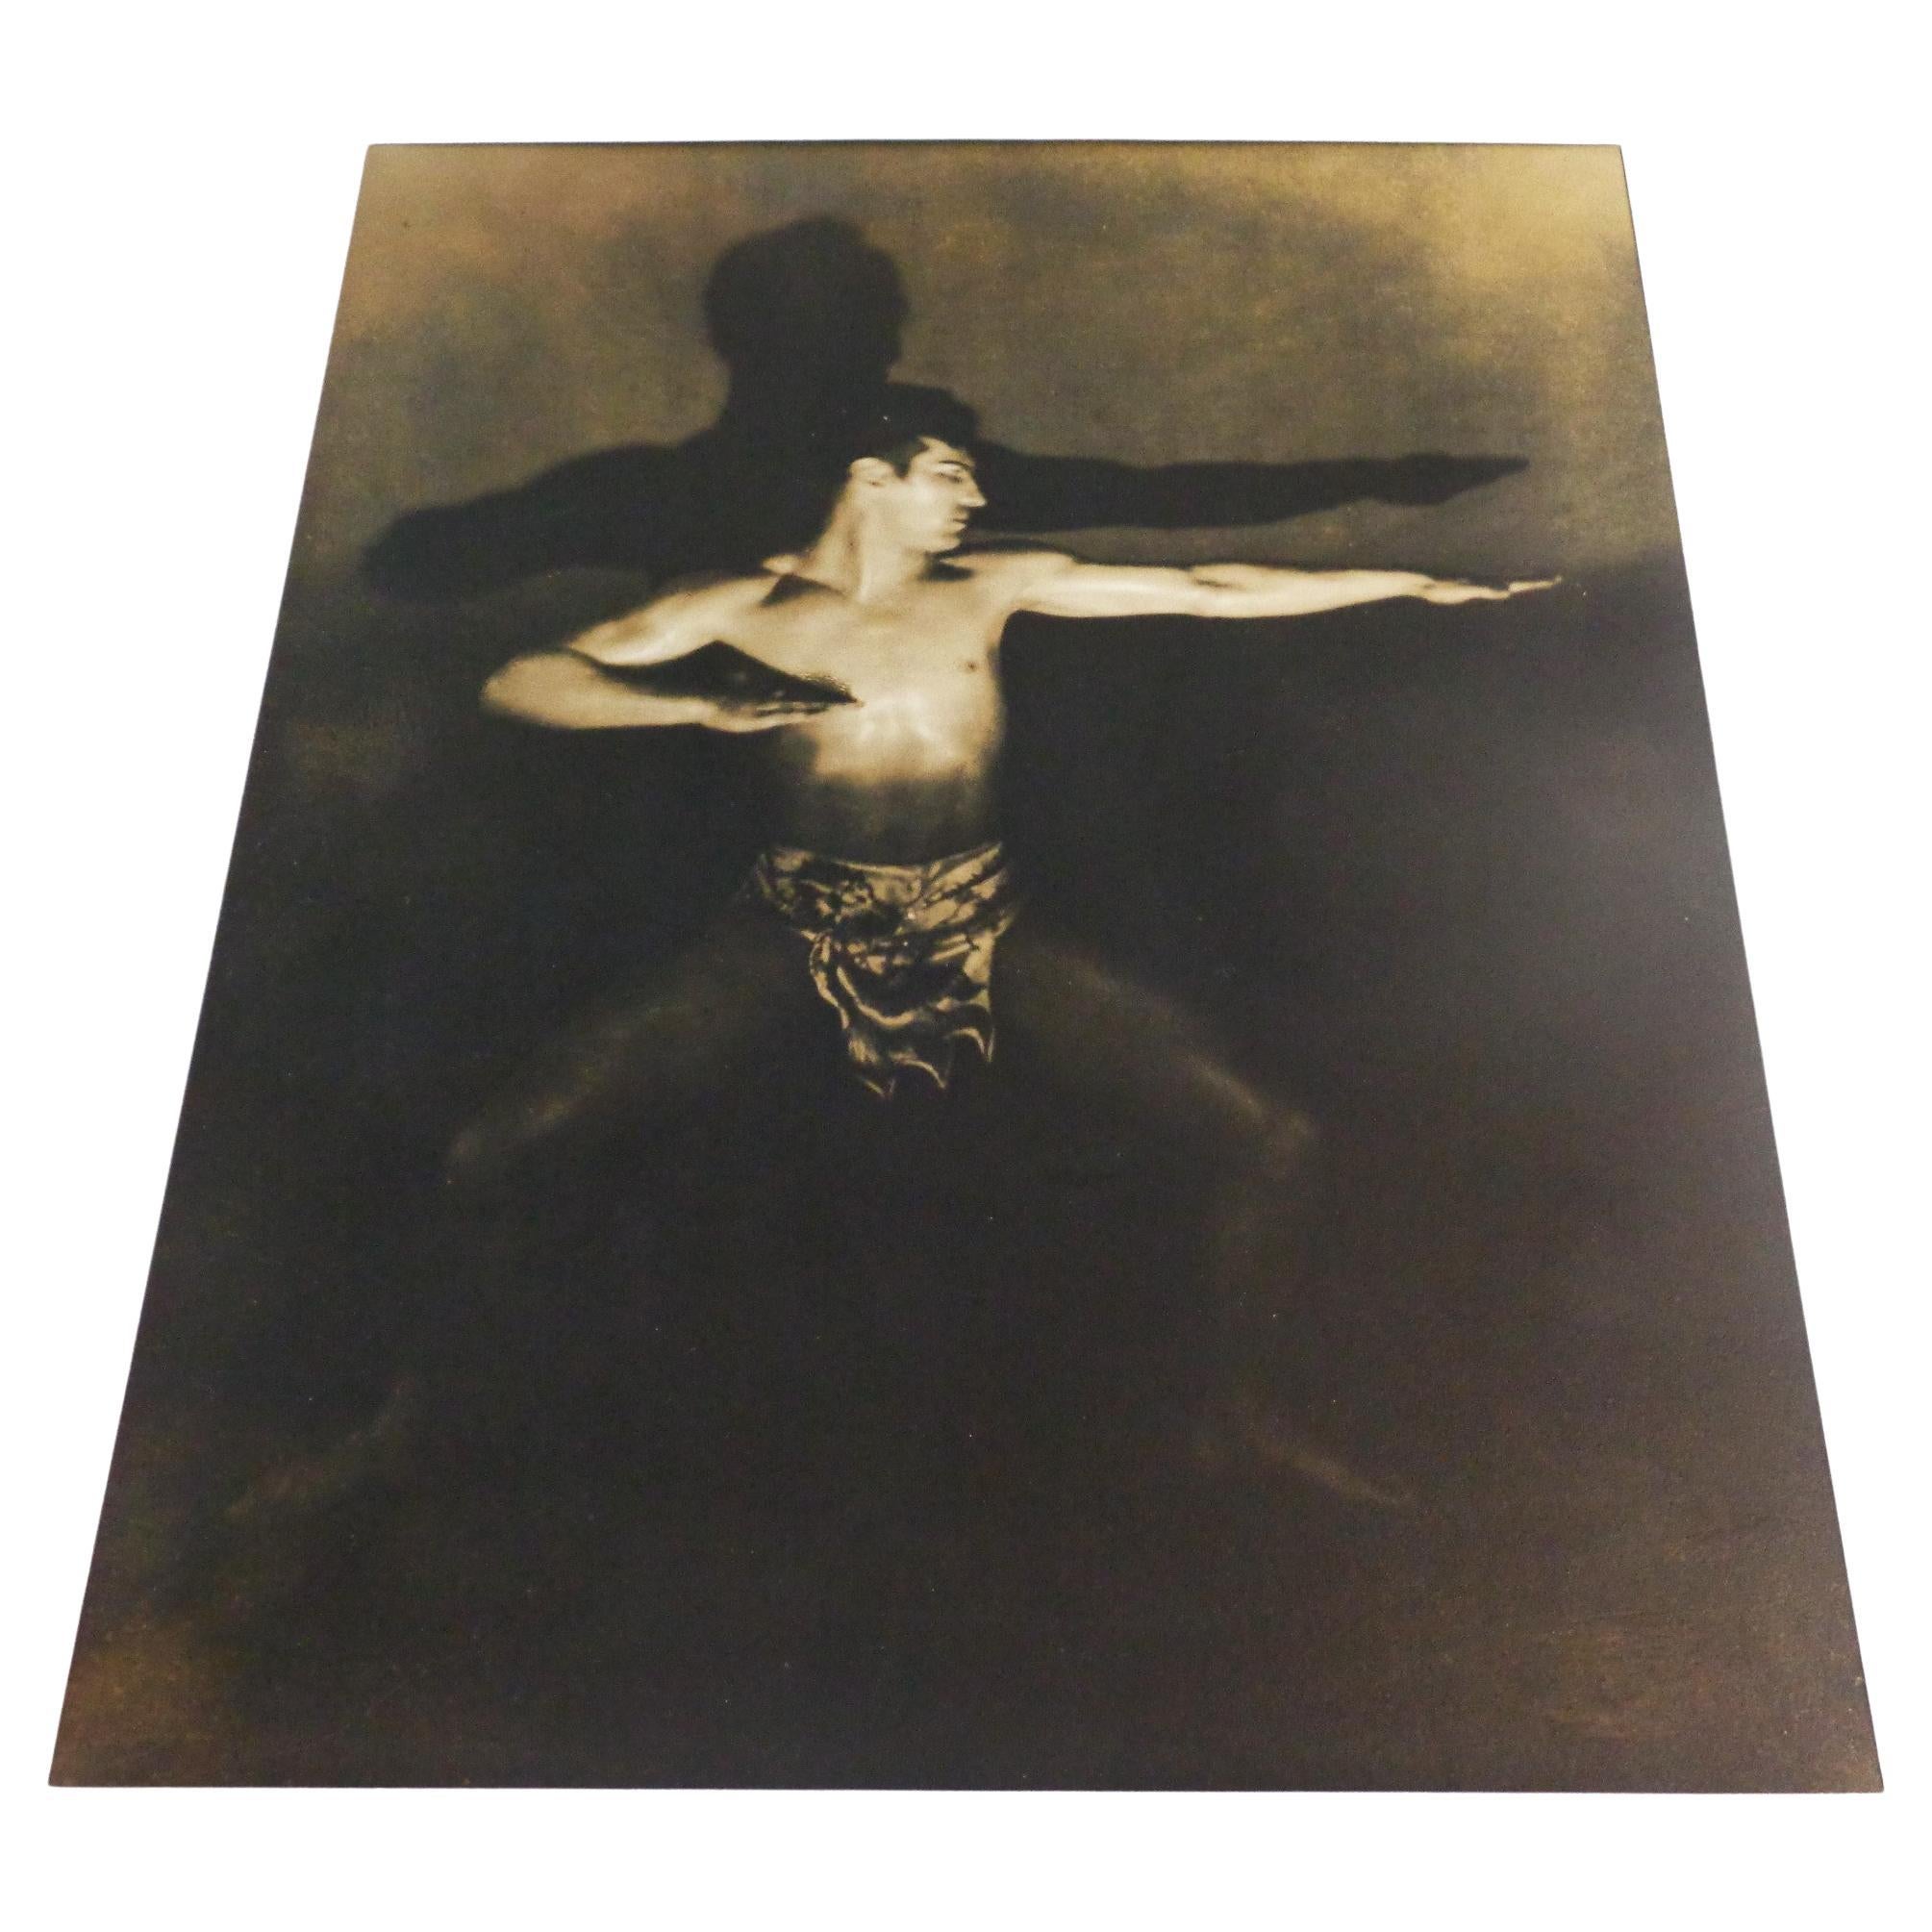 Pictorialistische Sepia-Gelatine-Silberdruck-Fotografie mit männlichem Akt, 1900-1910